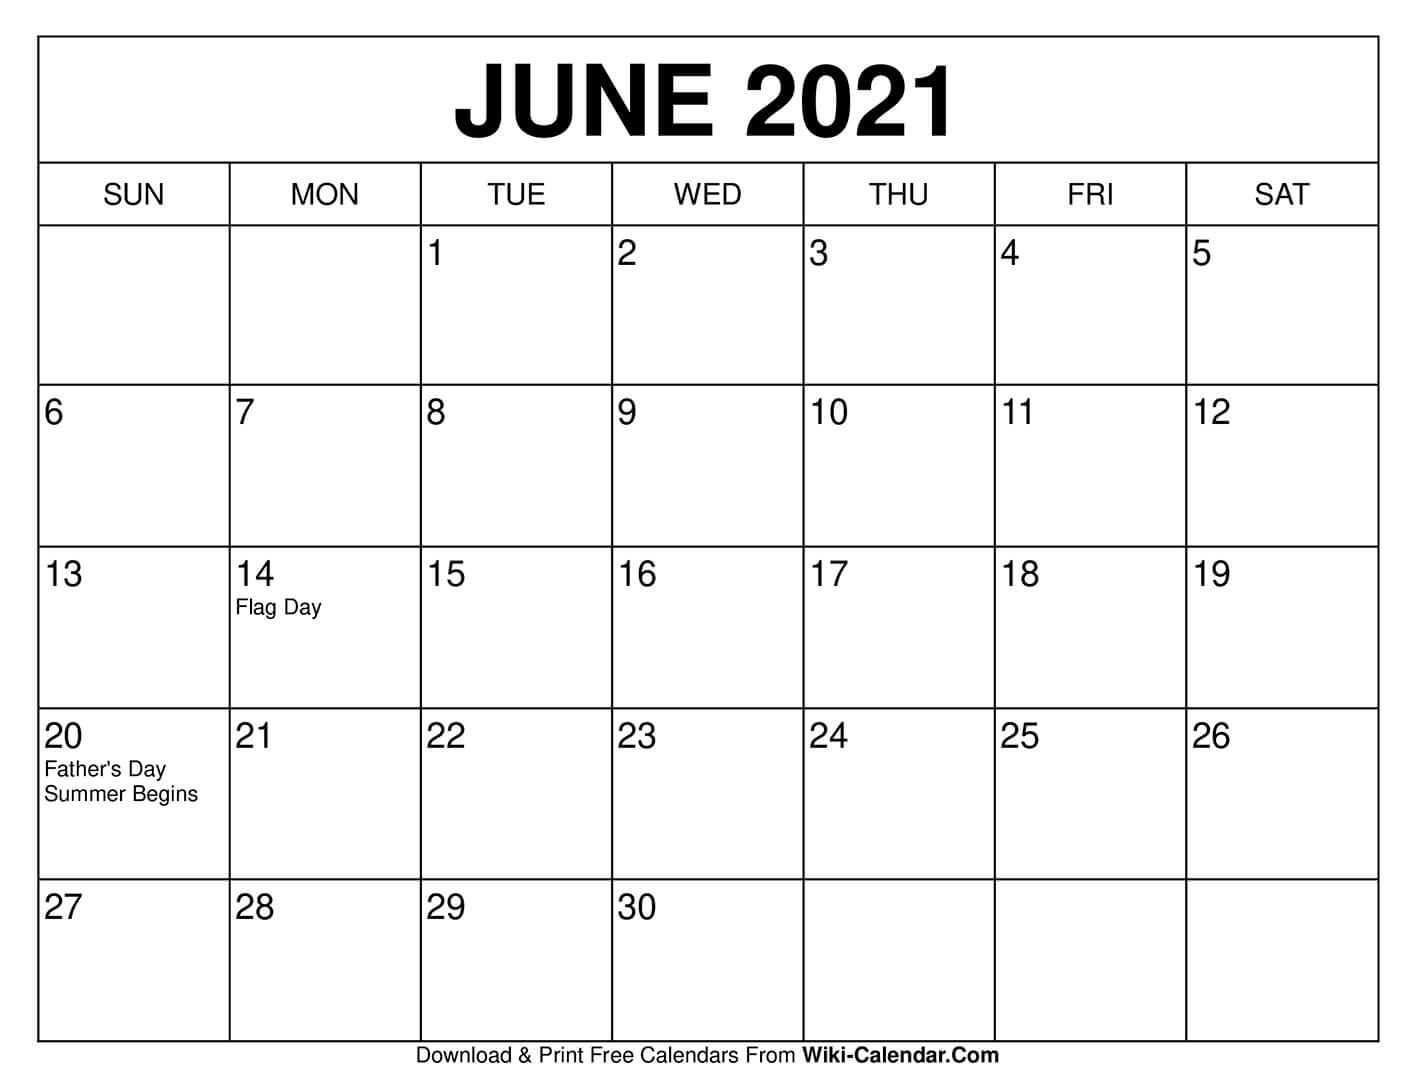 June 2021 Calendar | Calendar Printables, Free Calendars To